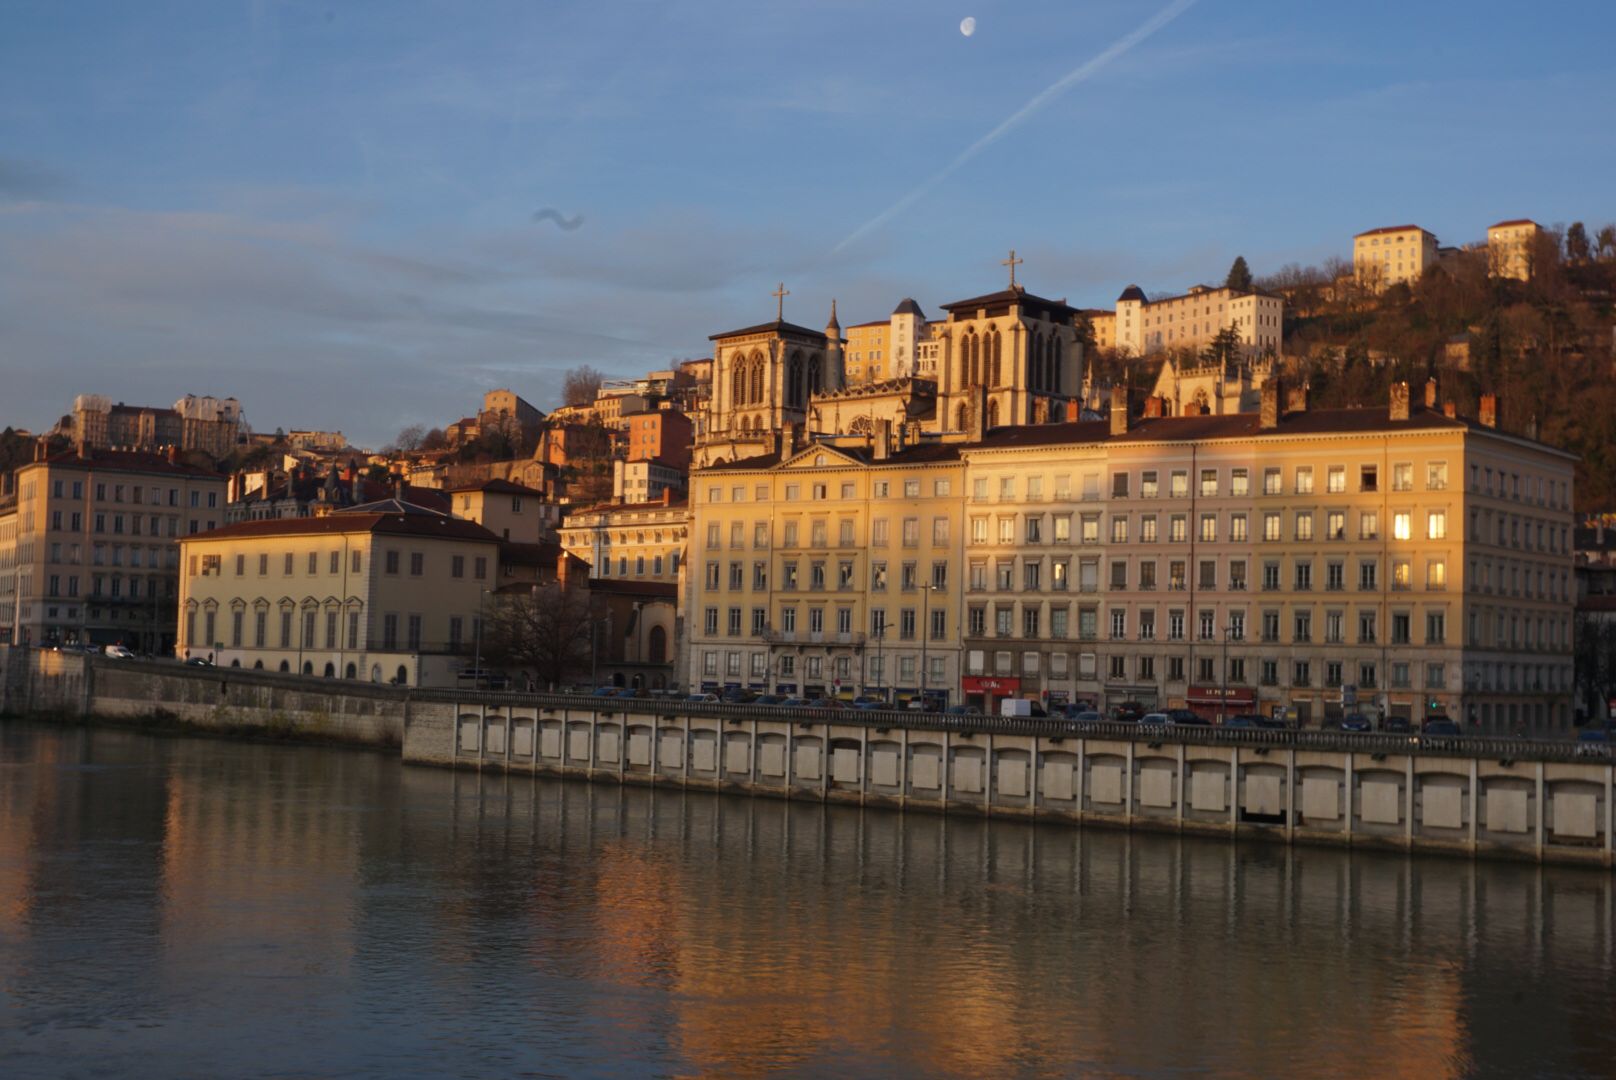 Bord de rivière avec des bâtiments historiques au lever de soleil.